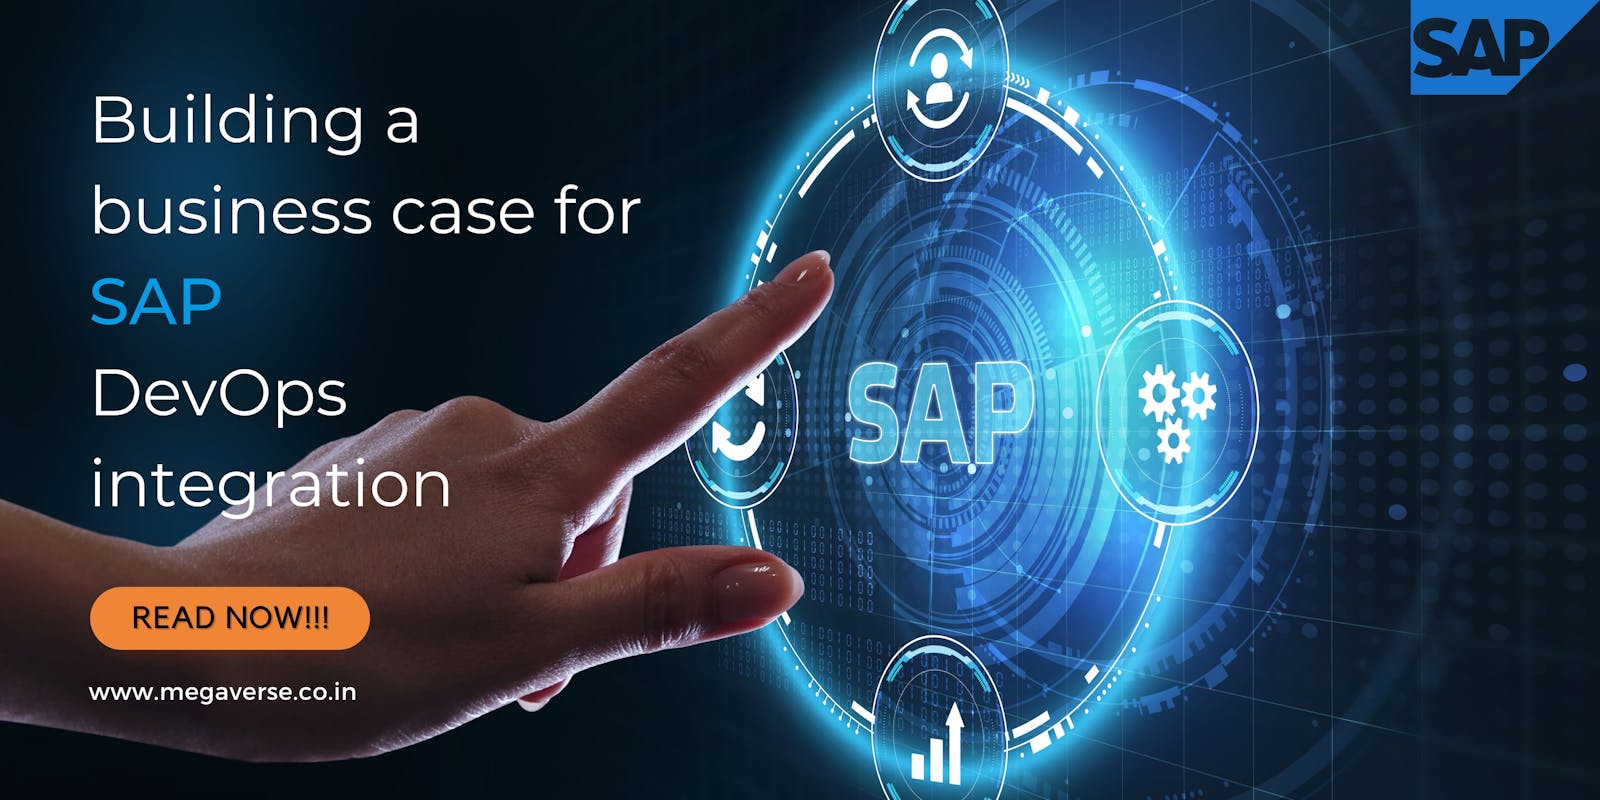 Building a business case for SAP DevOps integration